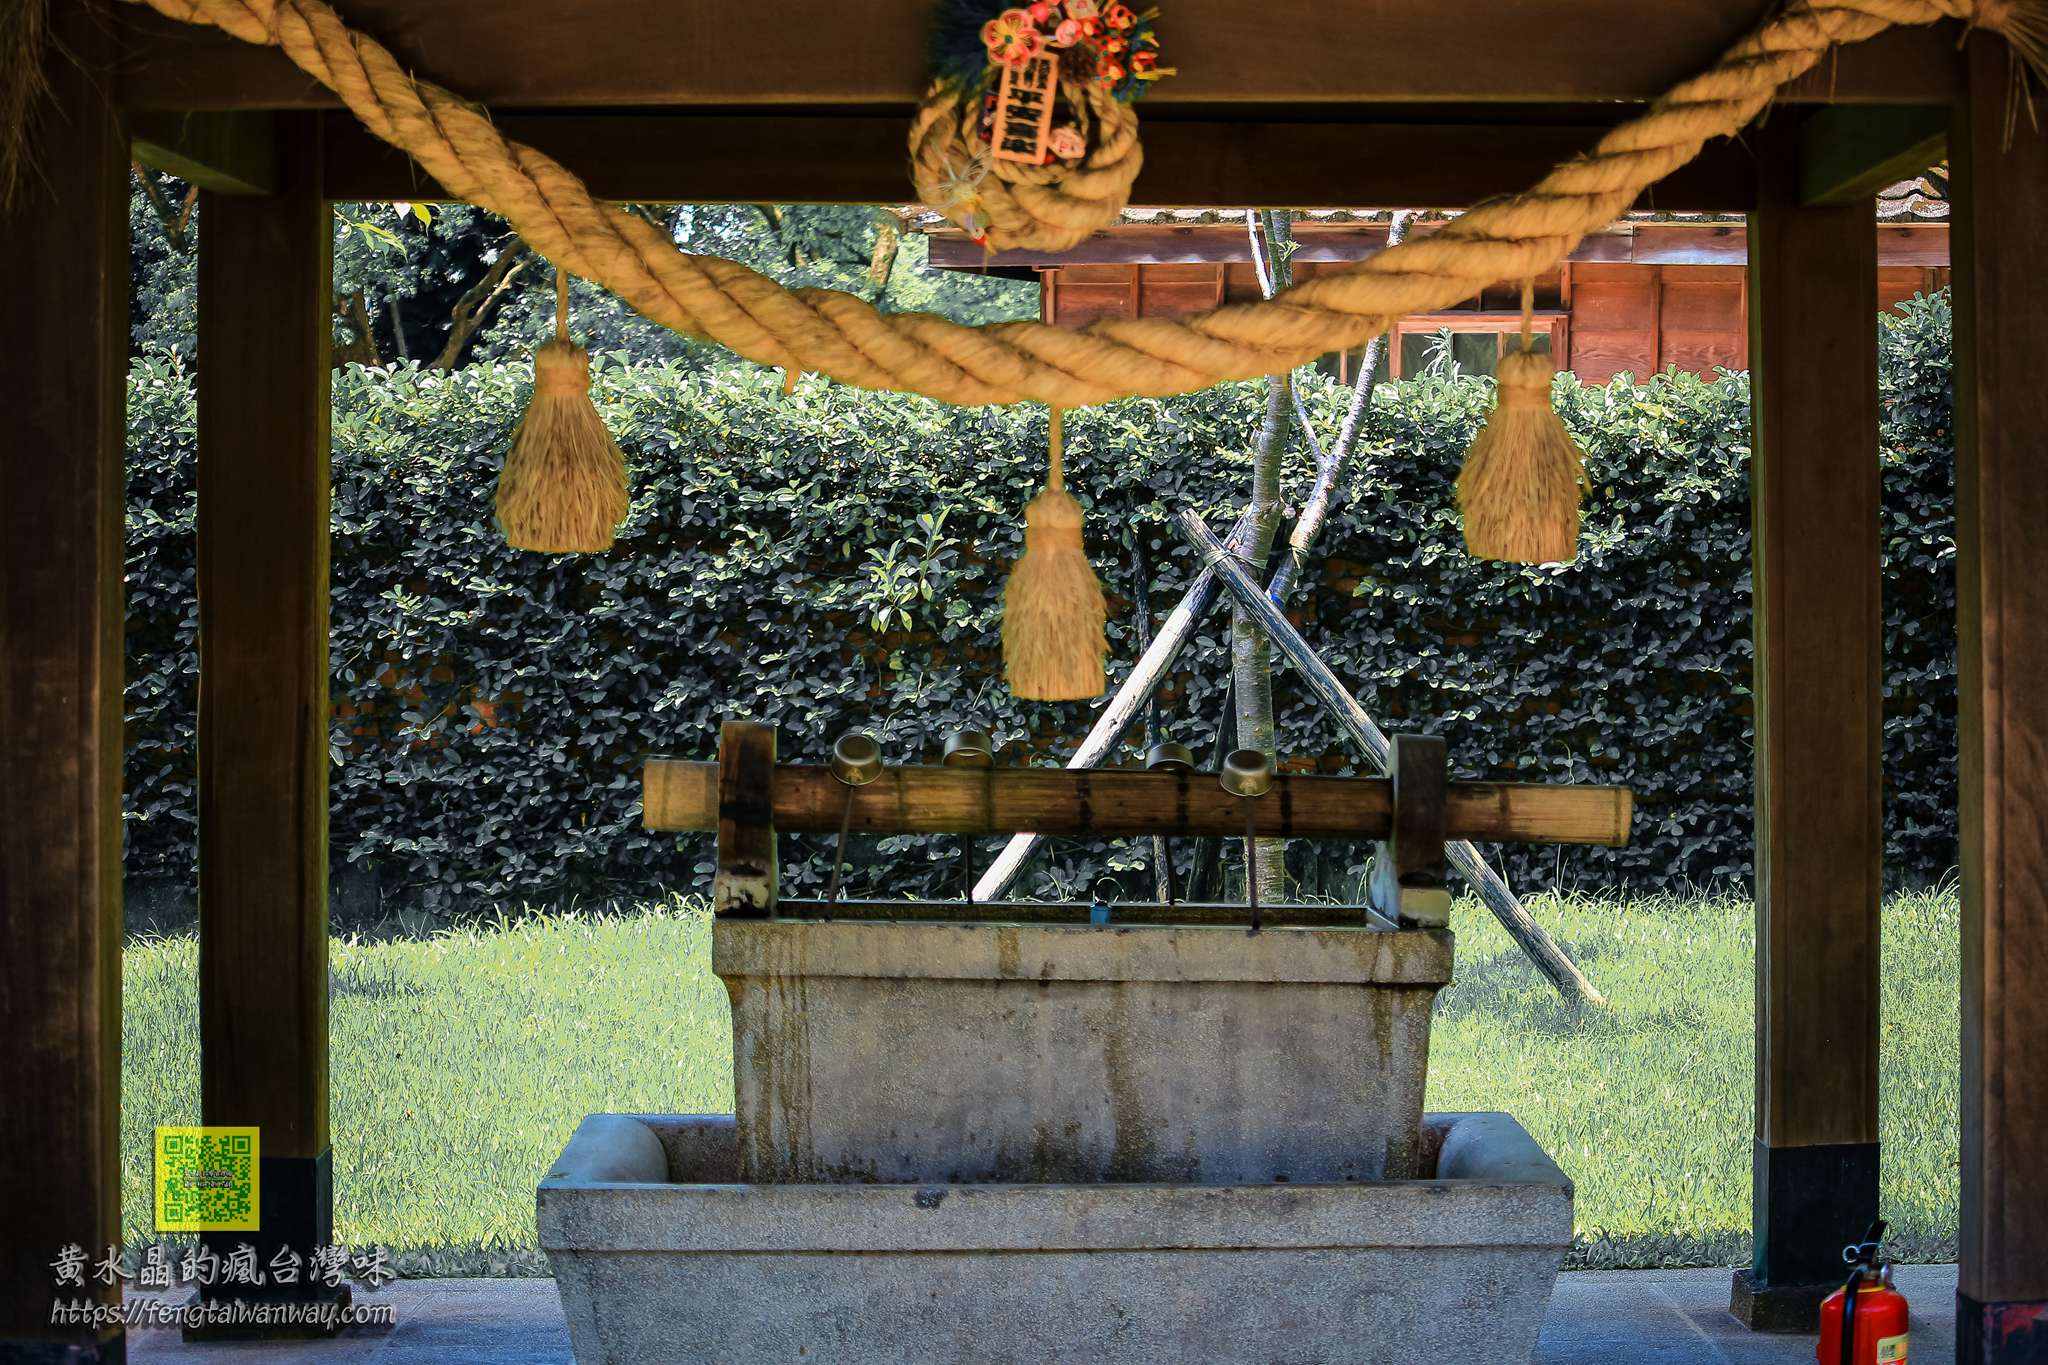 桃園神社【桃園景點】｜日本境外保存最完整神社建築群感受日式風情遊程